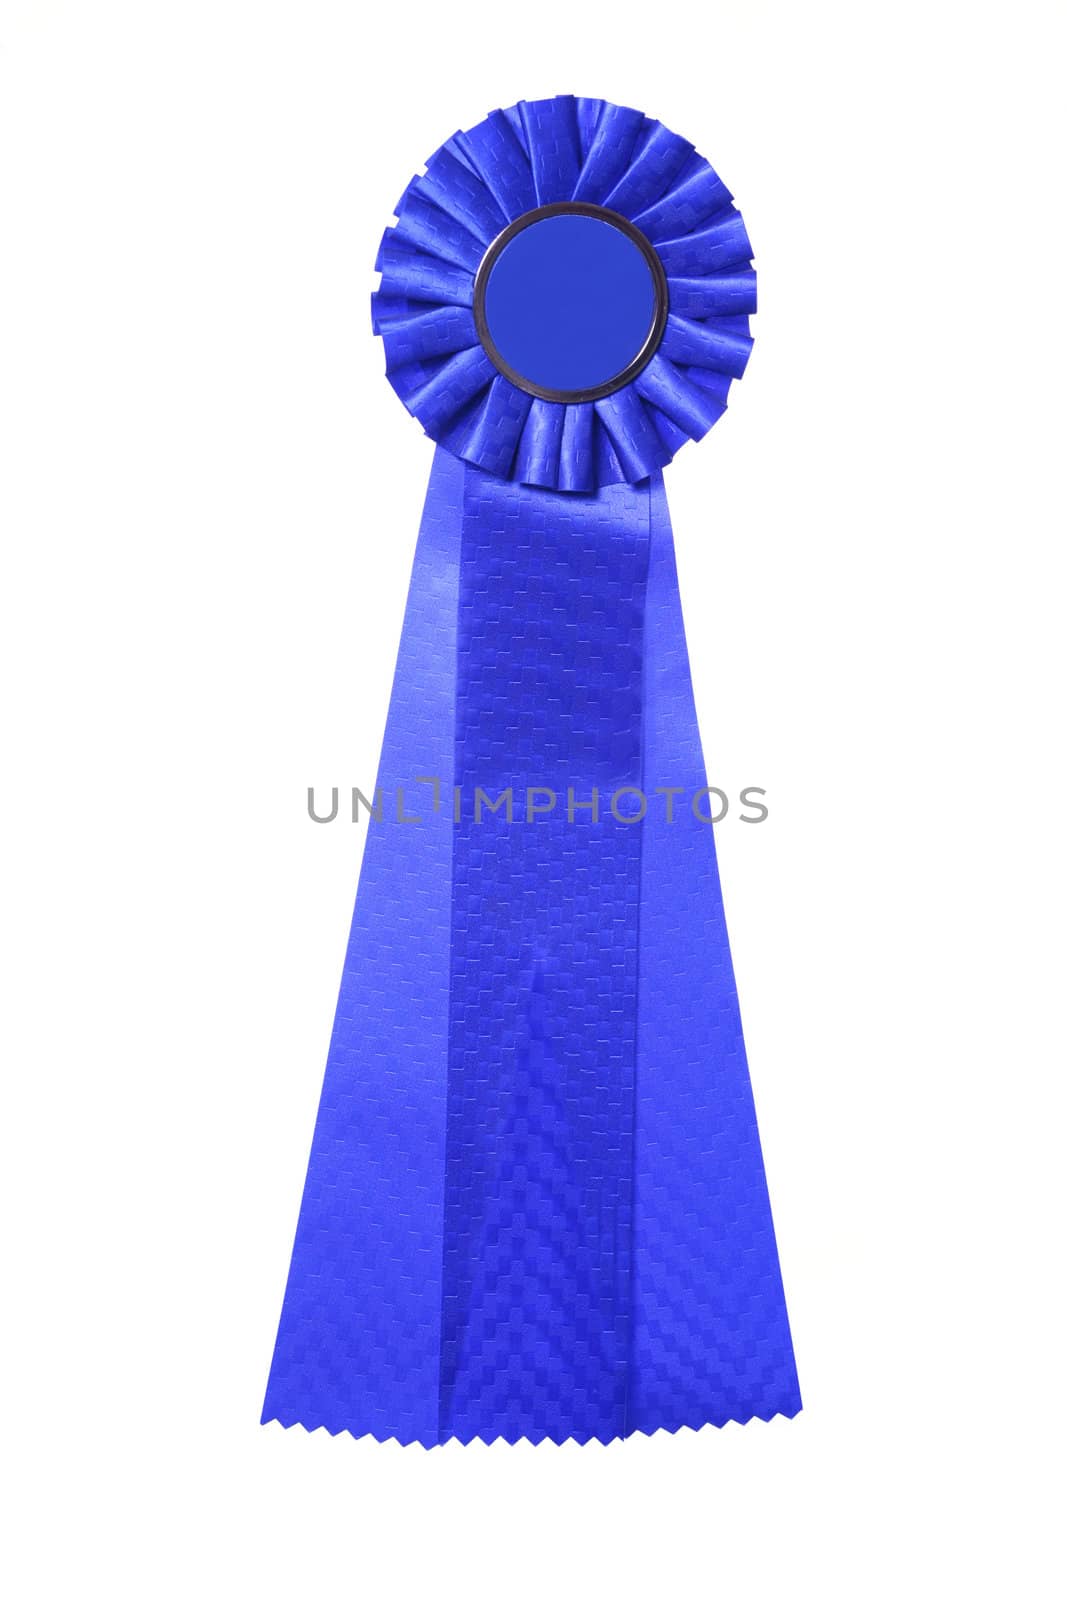 Blue ribbon award isolated on white